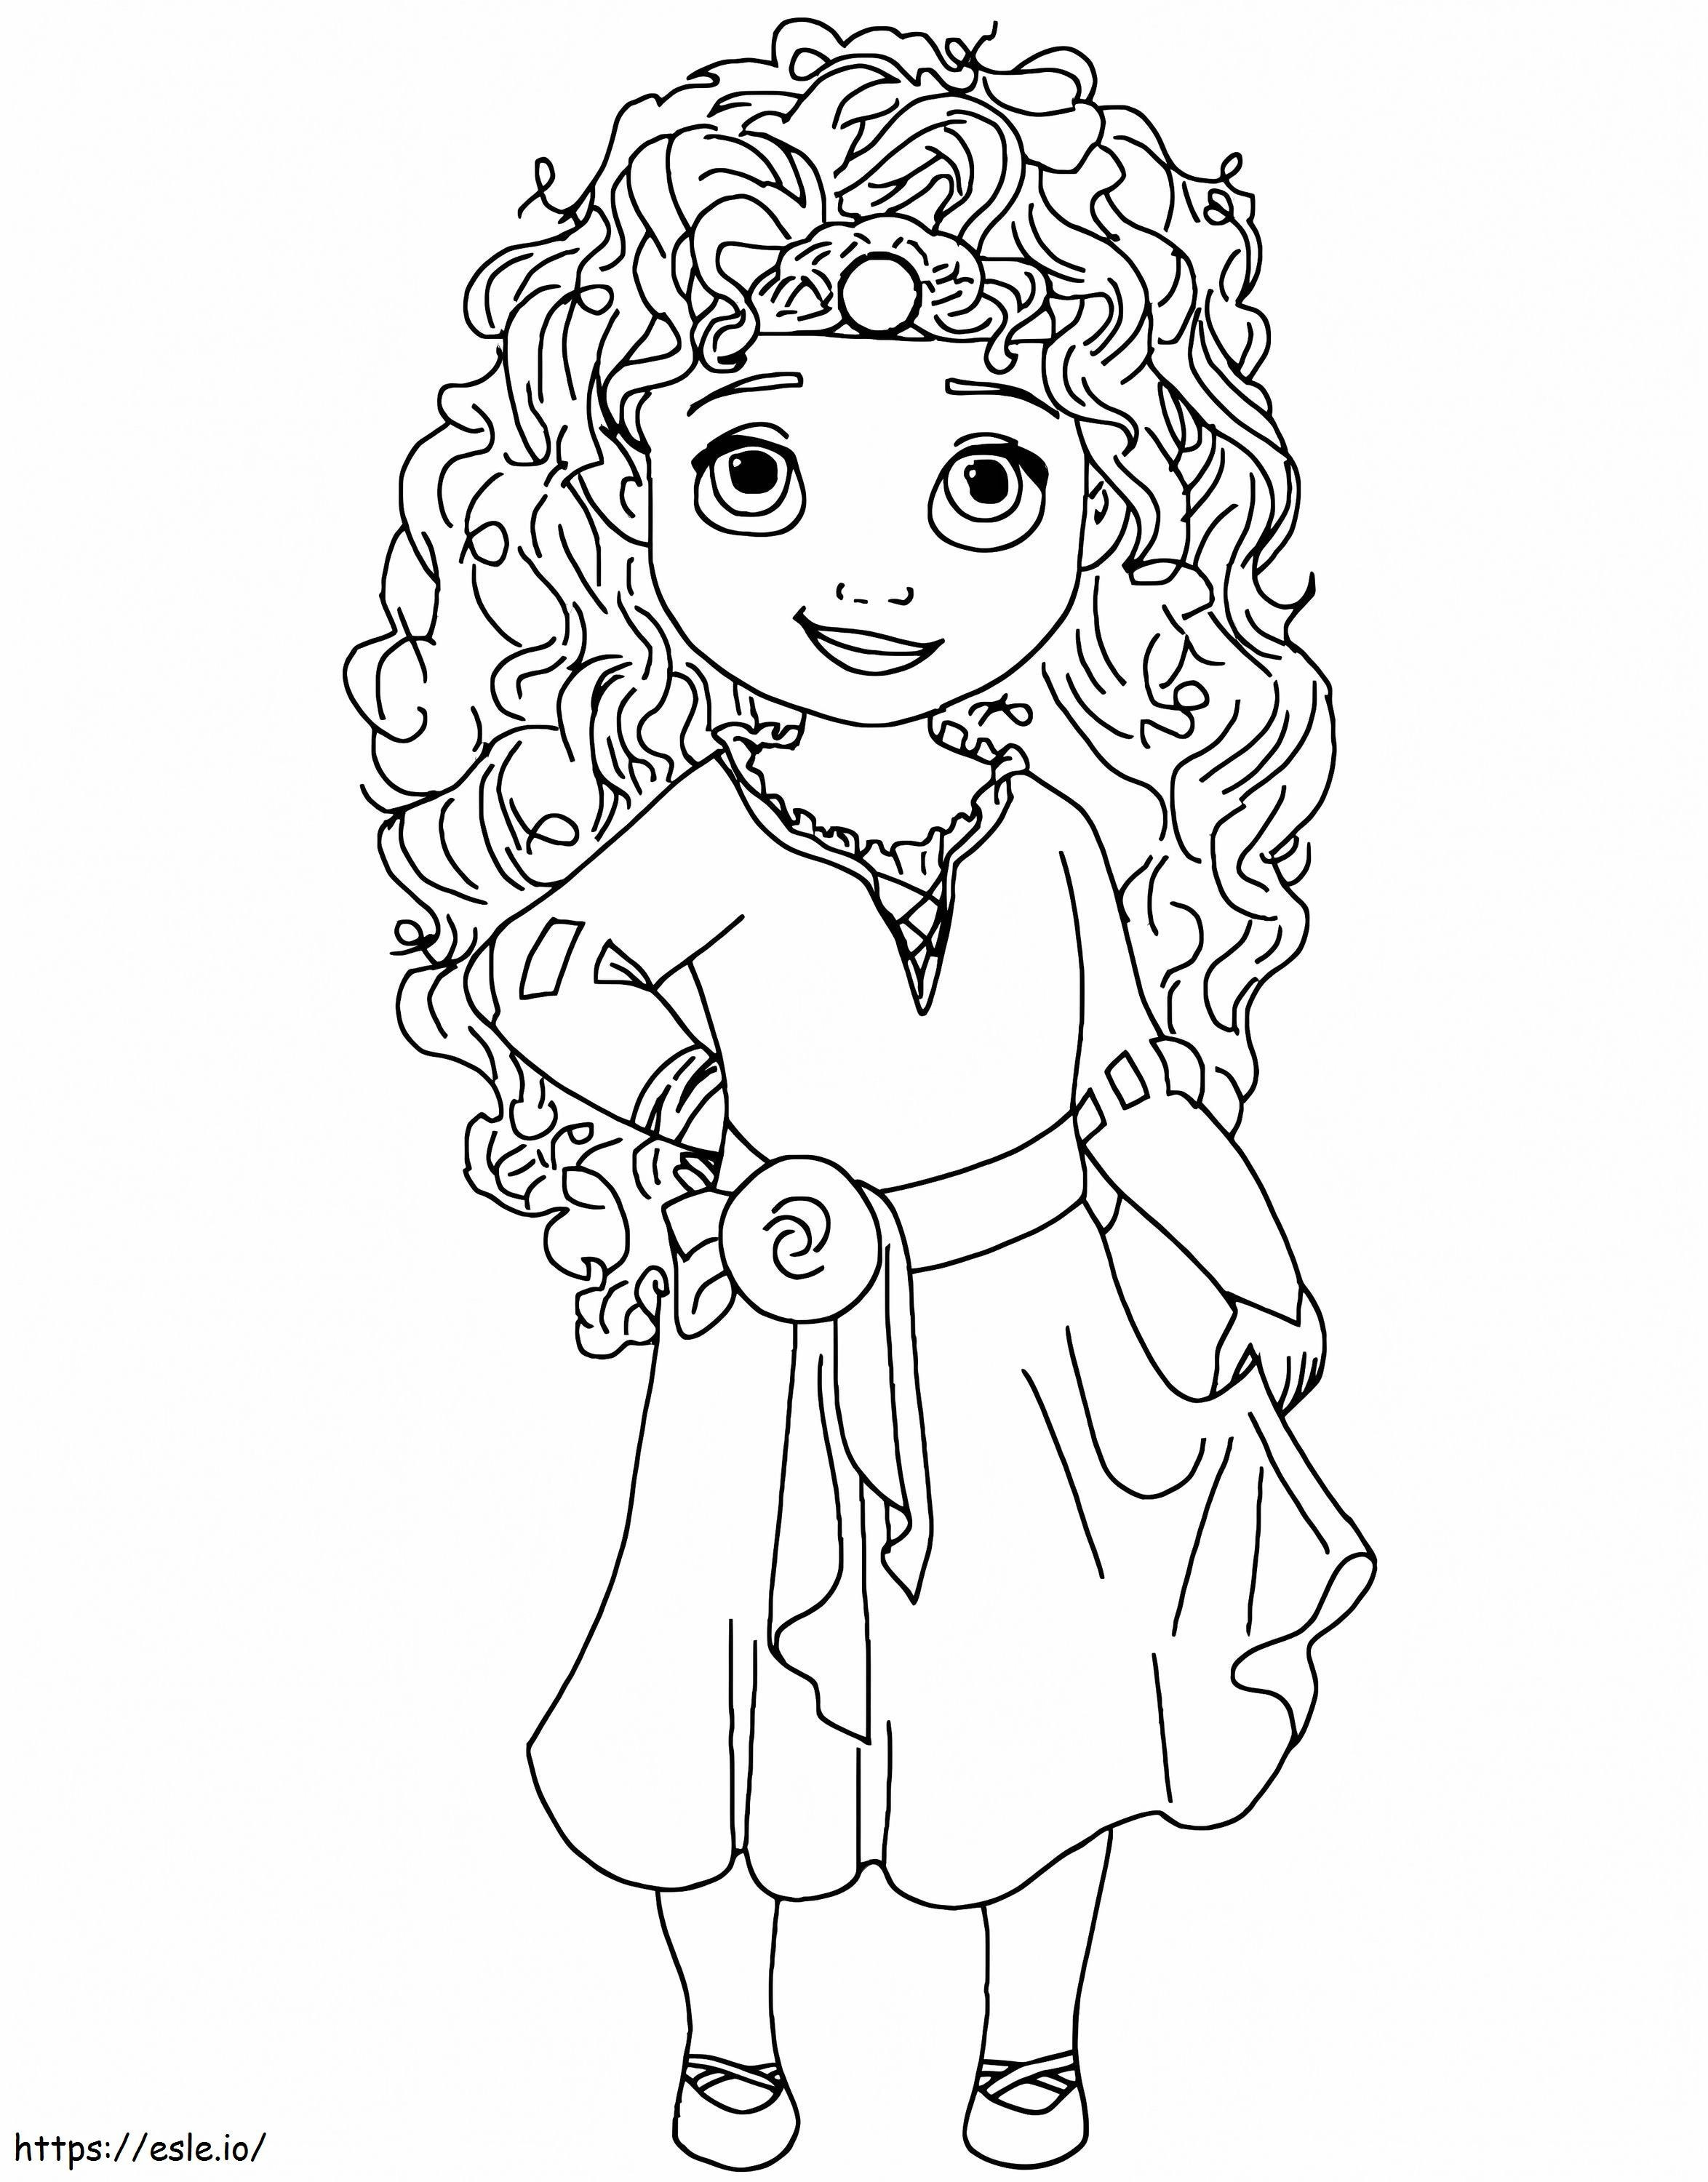 La piccola principessa Merida 1 da colorare